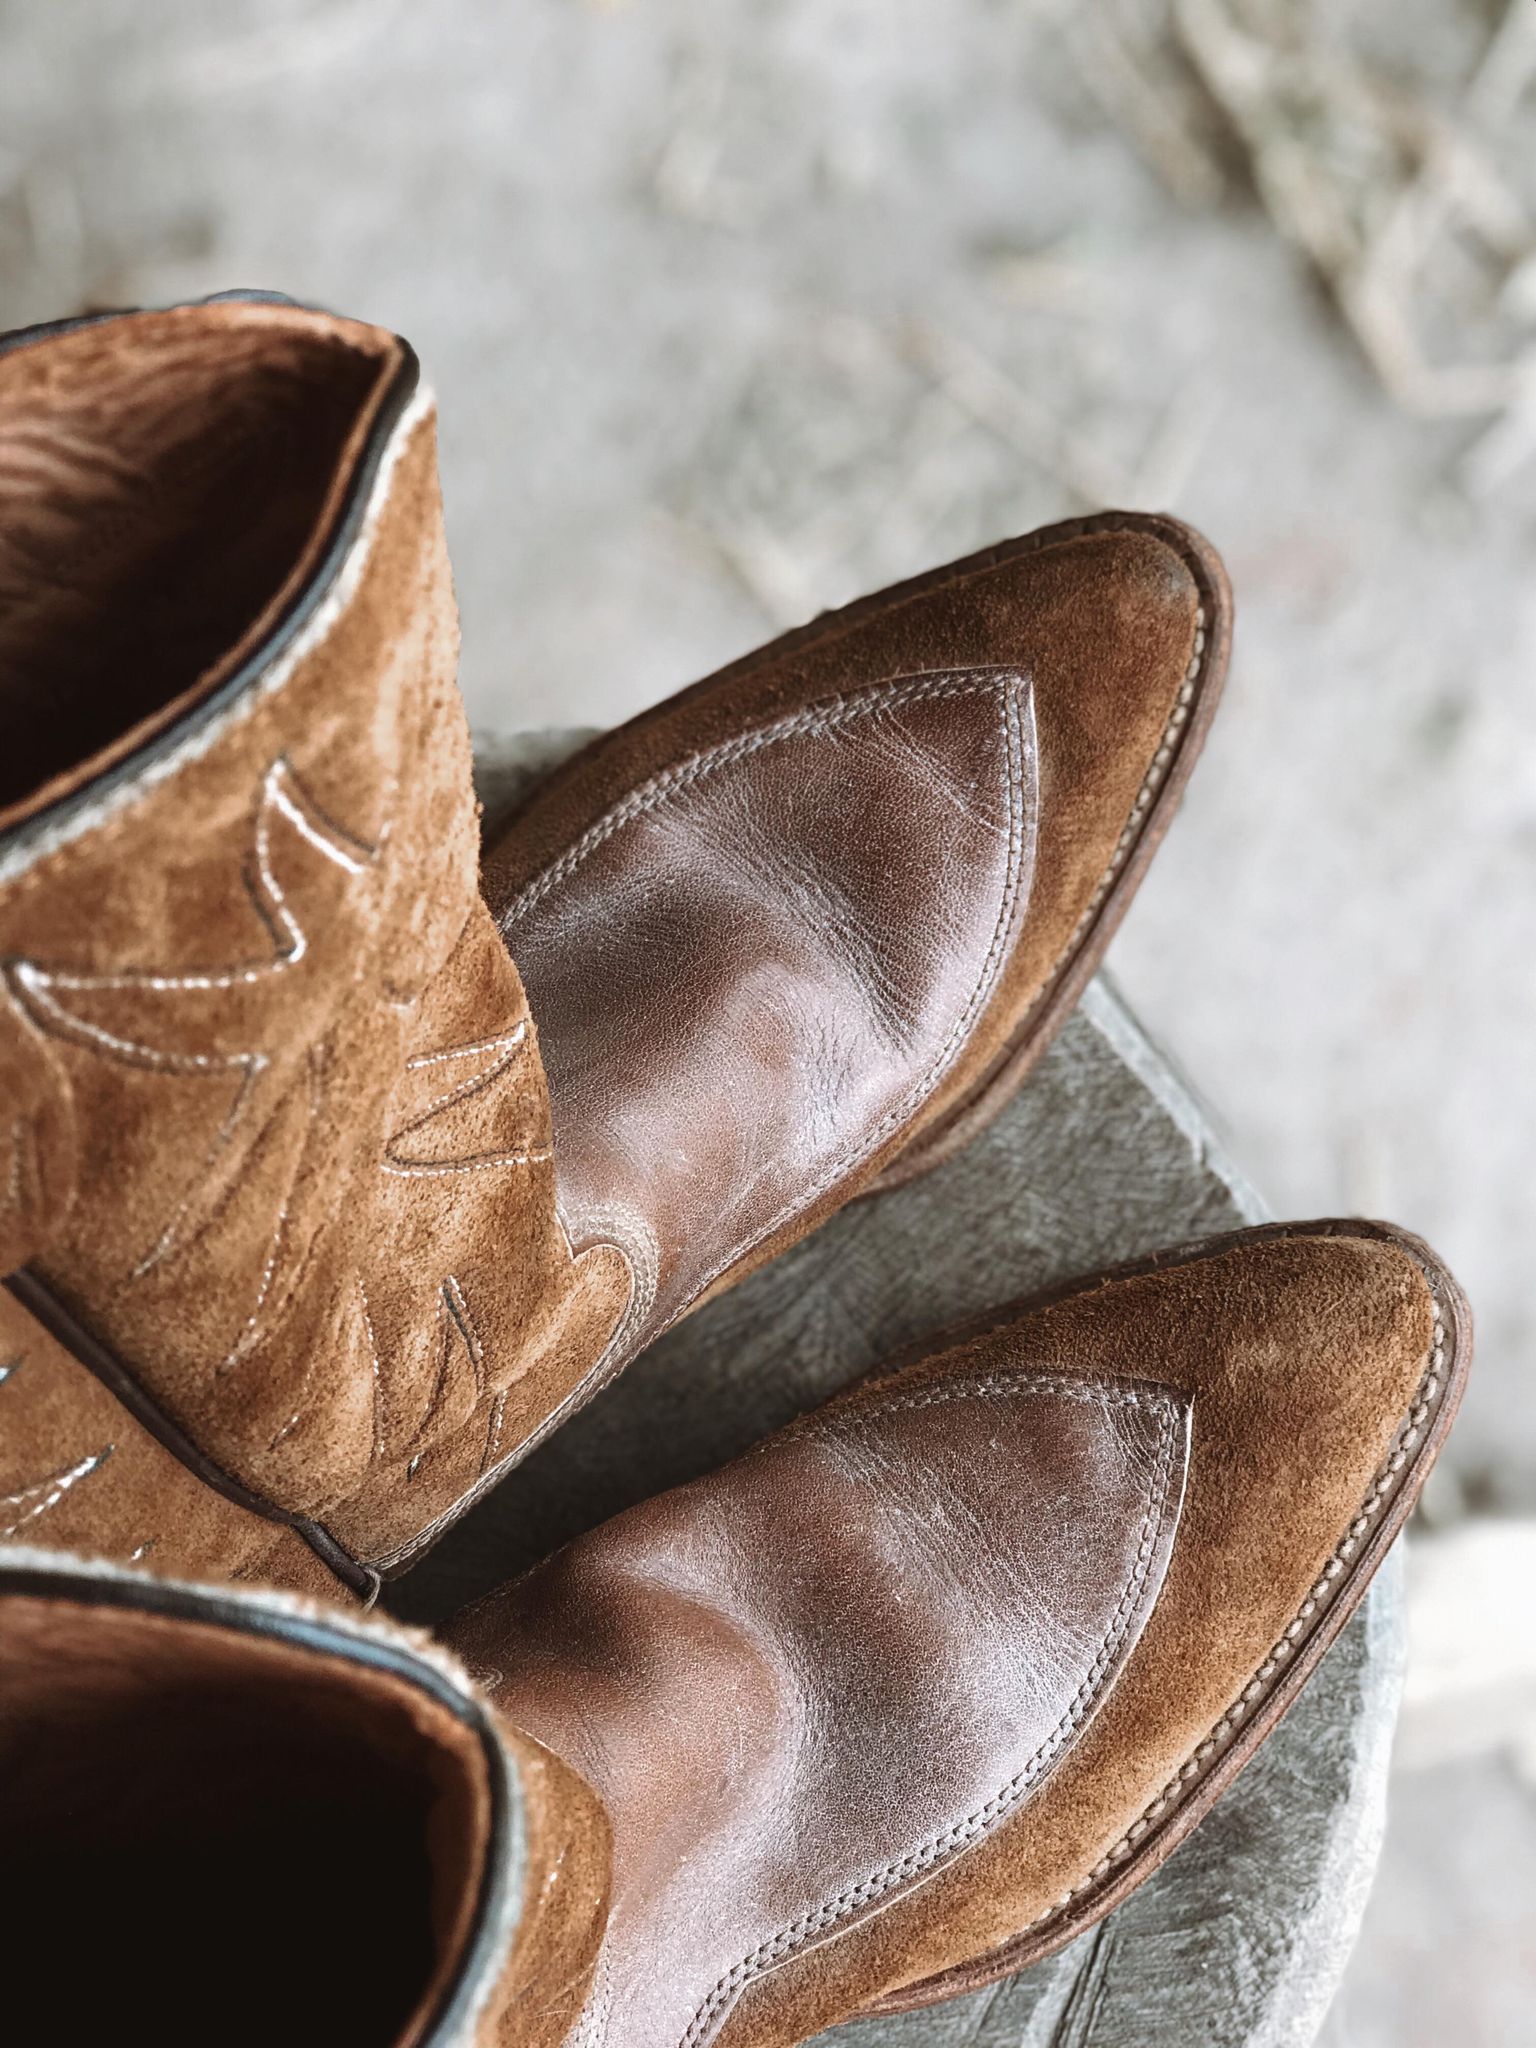 Vintage Rough Out Cowboy Boots